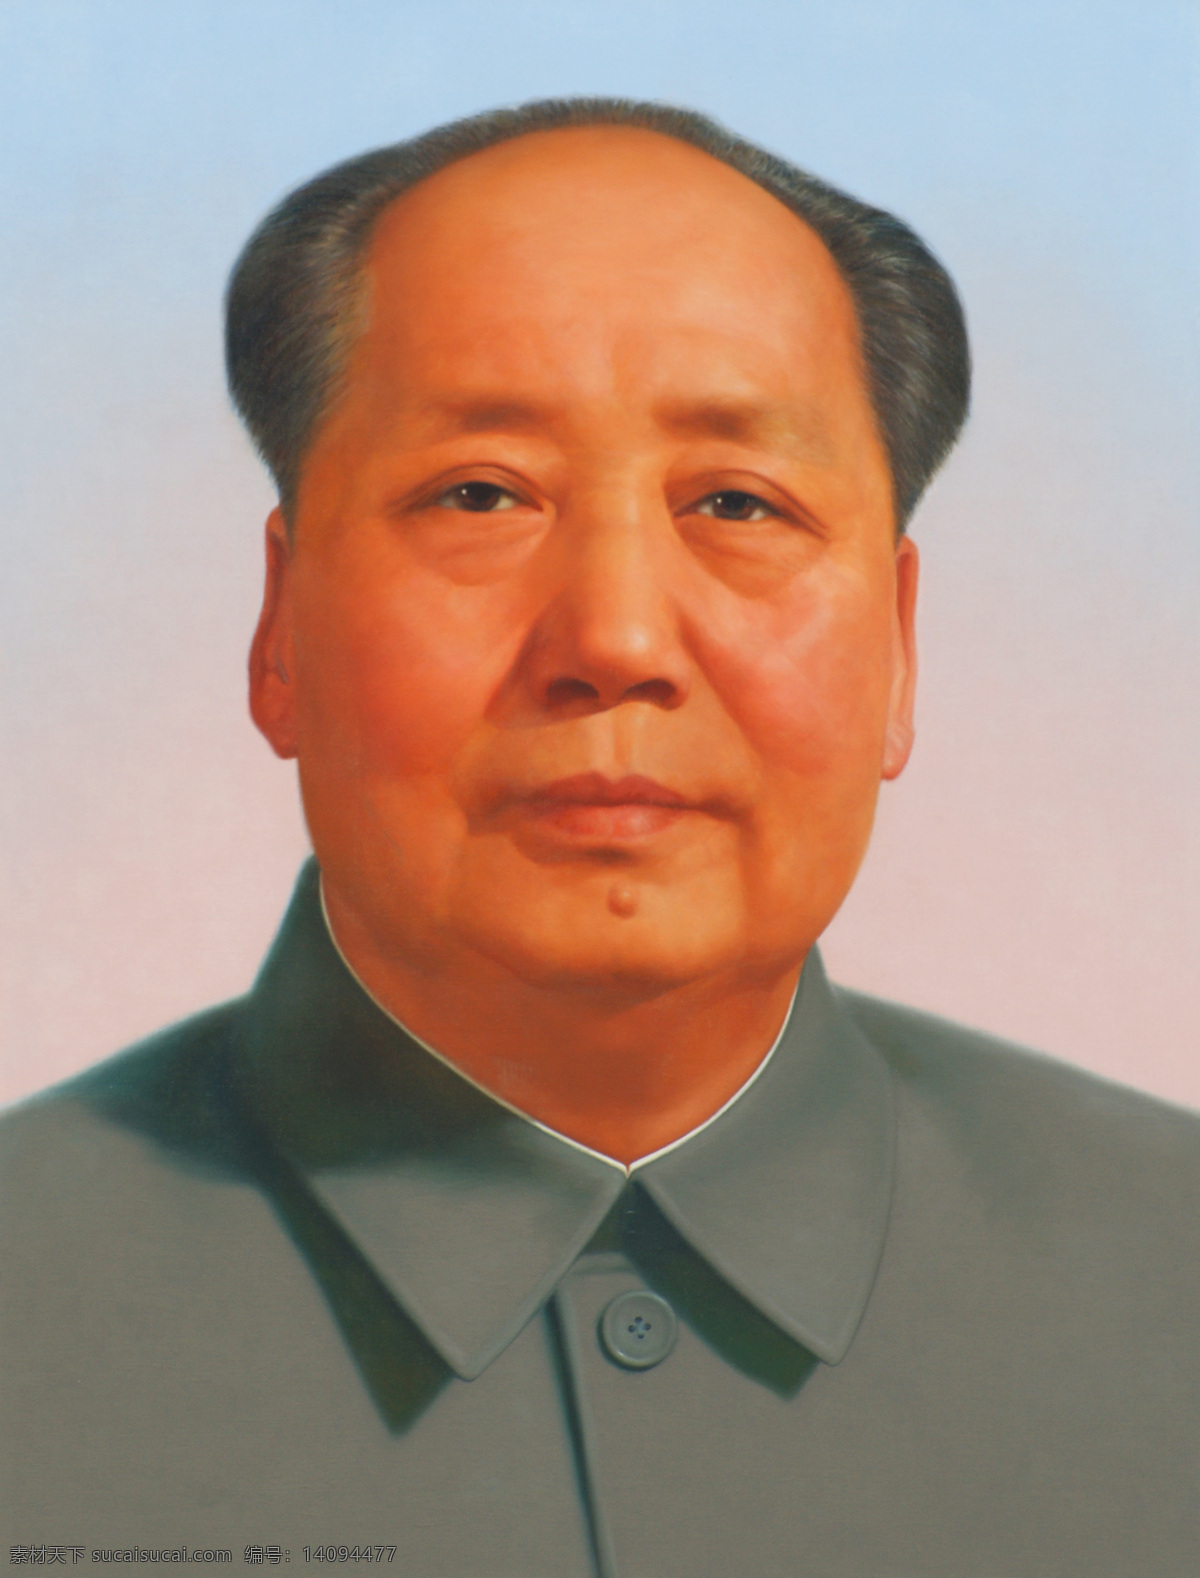 毛主席 天安门 毛泽东 主席像 毛主席像 人物图库